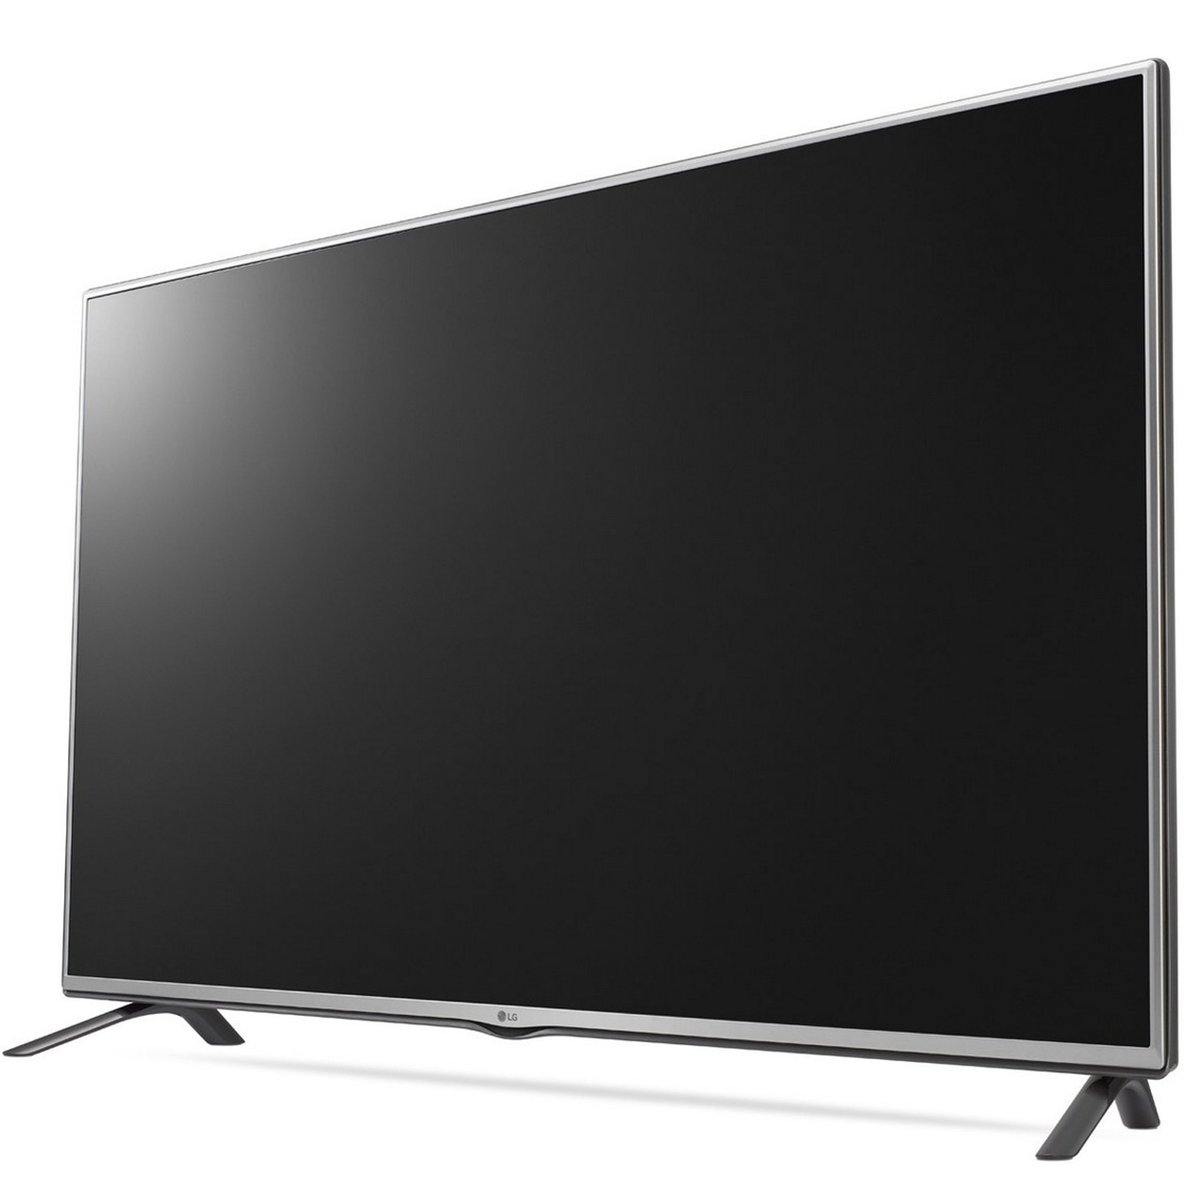 LG Full HD LED TV 42LF550T 42inch